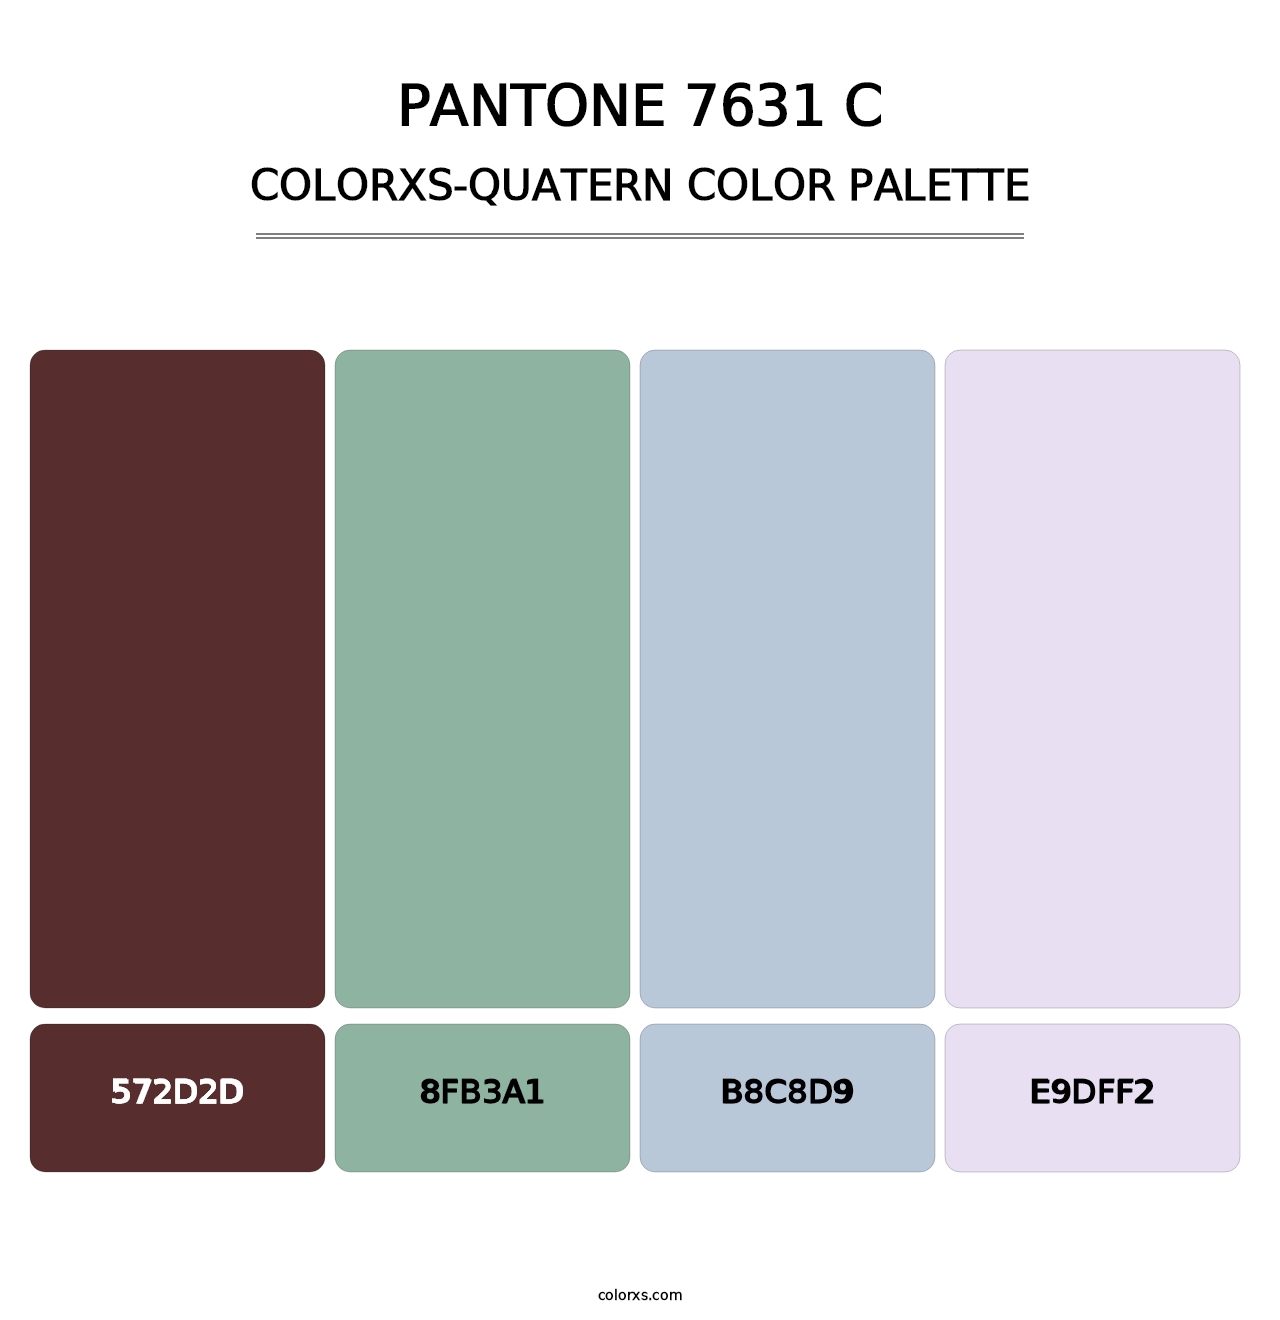 PANTONE 7631 C - Colorxs Quatern Palette